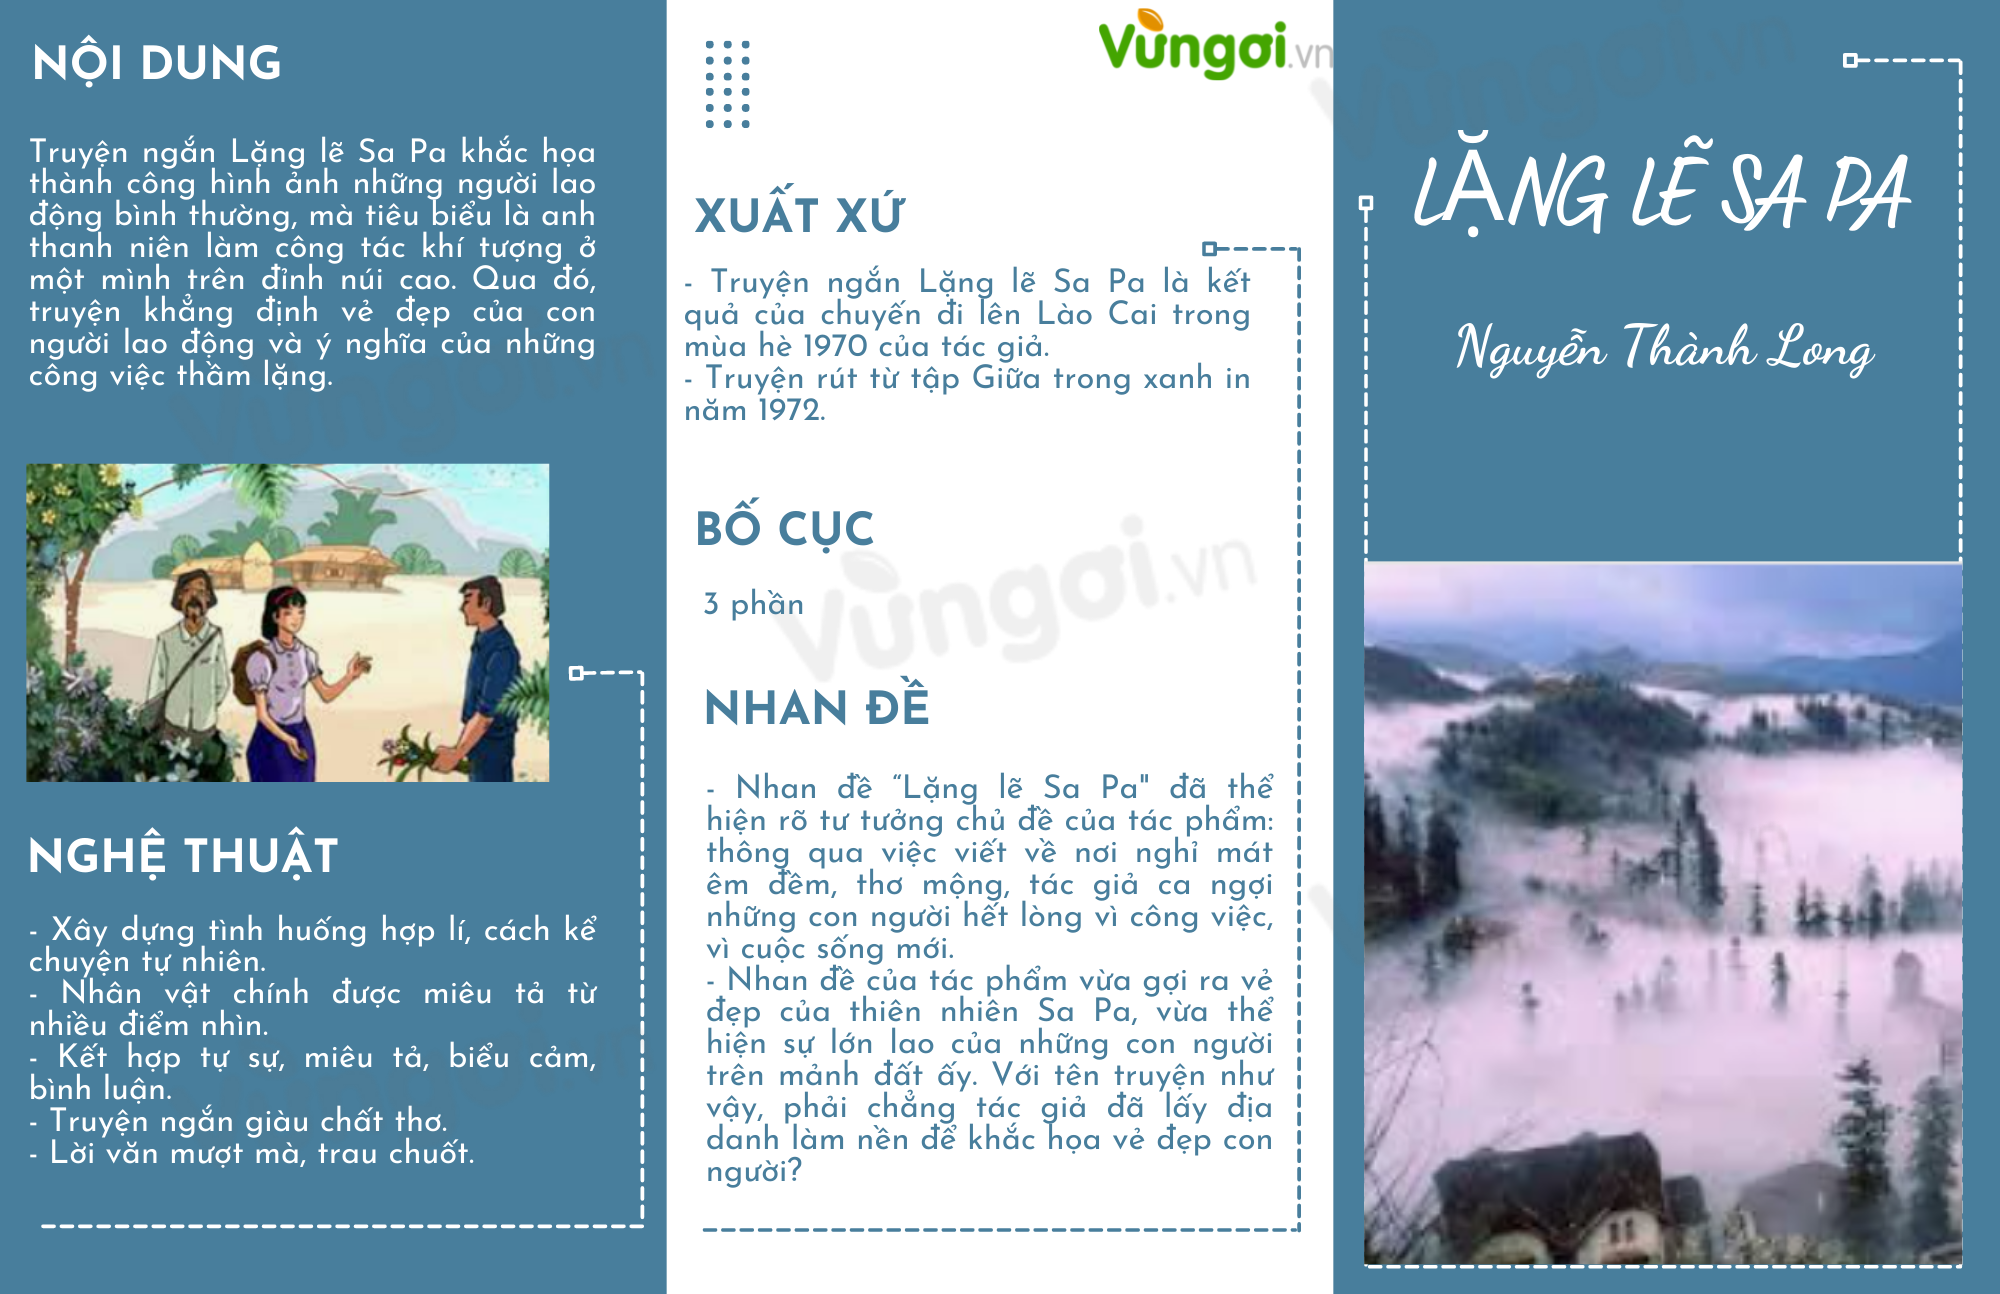 Sapa là một trong những điểm đến du lịch hấp dẫn nhất của Việt Nam, với khung cảnh thiên nhiên tuyệt đẹp với những đồi chè xanh ngắt, đỉnh núi phủ tuyết hay những thác nước hùng vĩ. Hãy nhấn vào hình ảnh để cảm nhận sự tuyệt vời của Sa Pa.